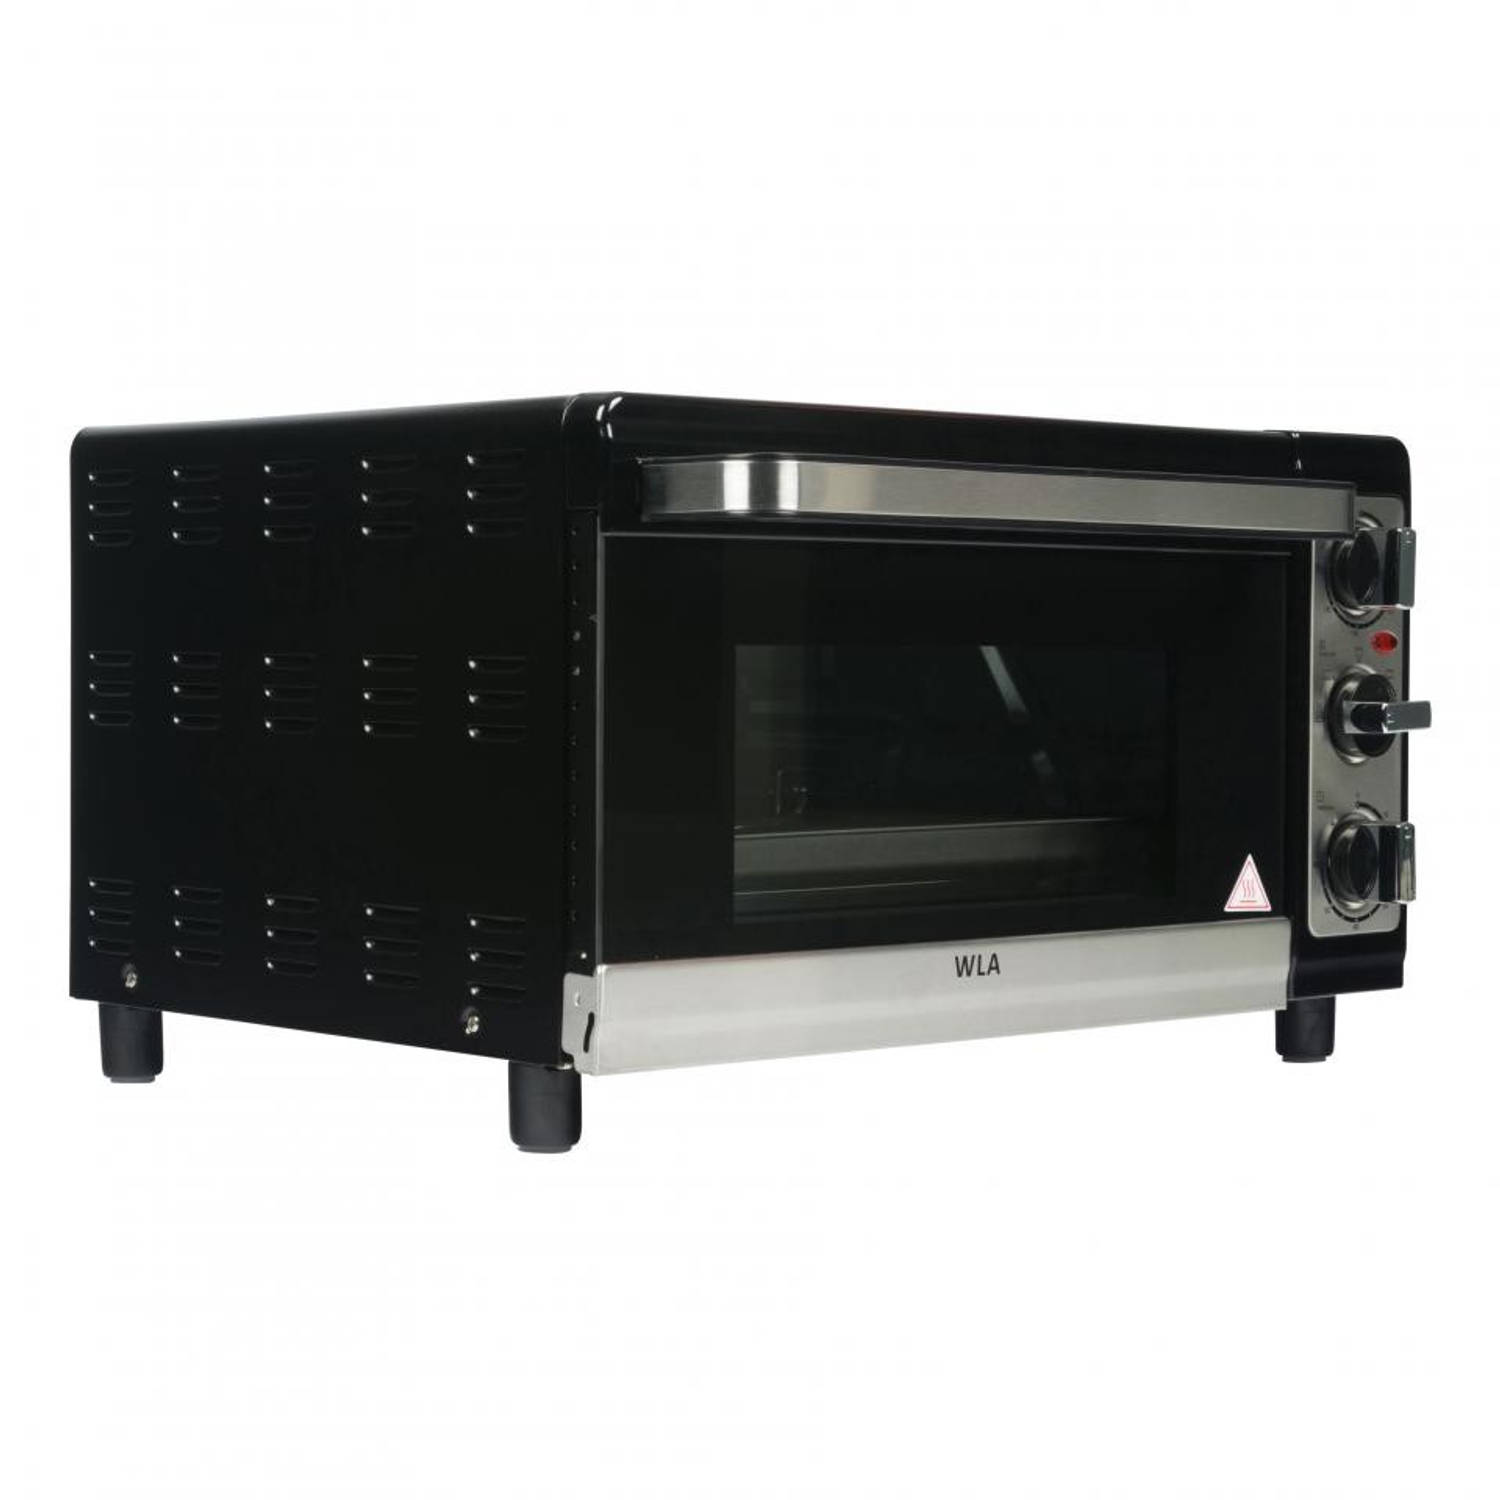 WLA mini-oven 25OVB800 - 25 liter Blokker